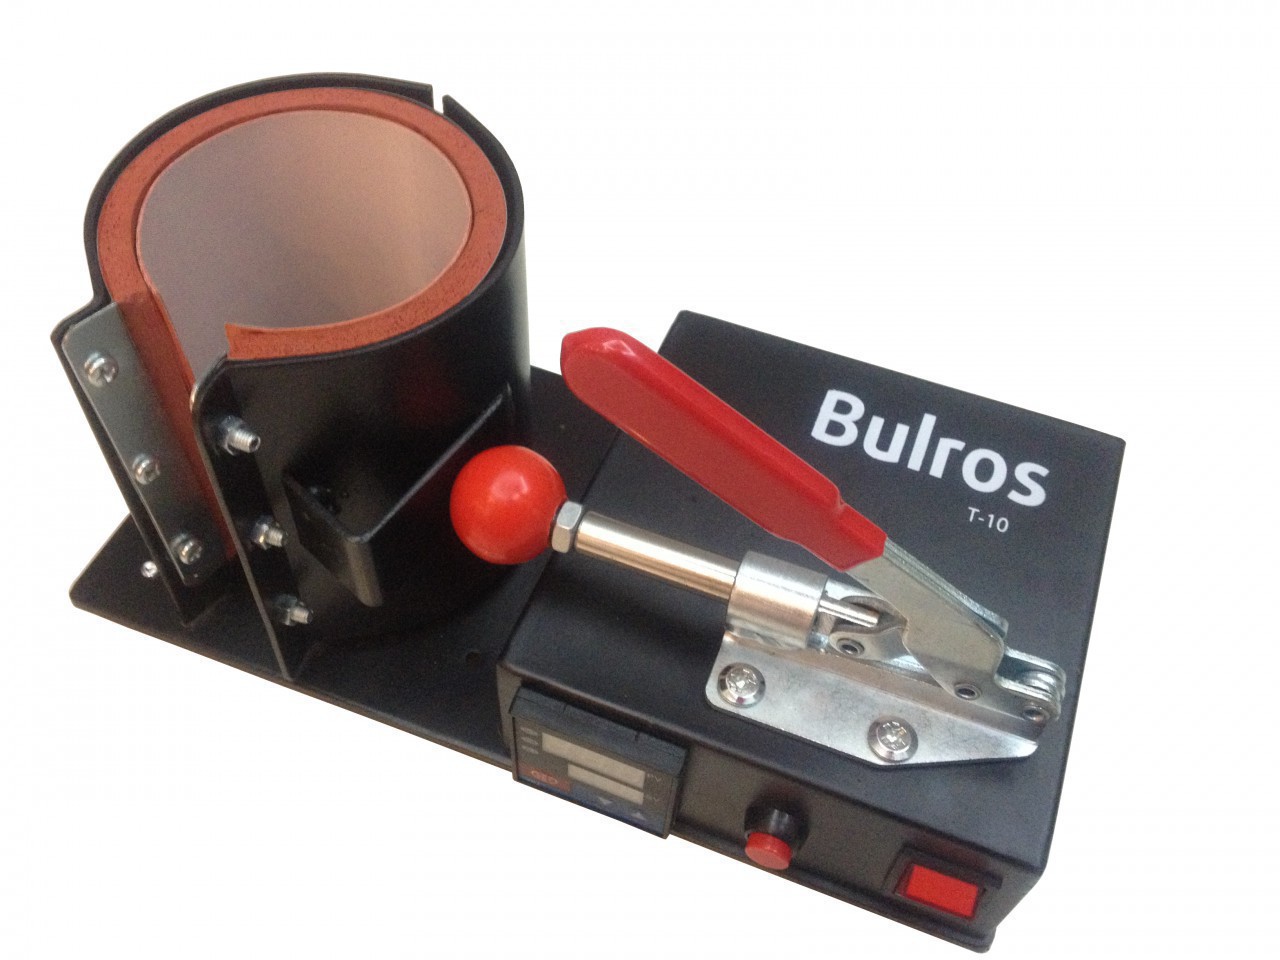 Кружечный термопресс Bulros T-10 new - 9847 руб.